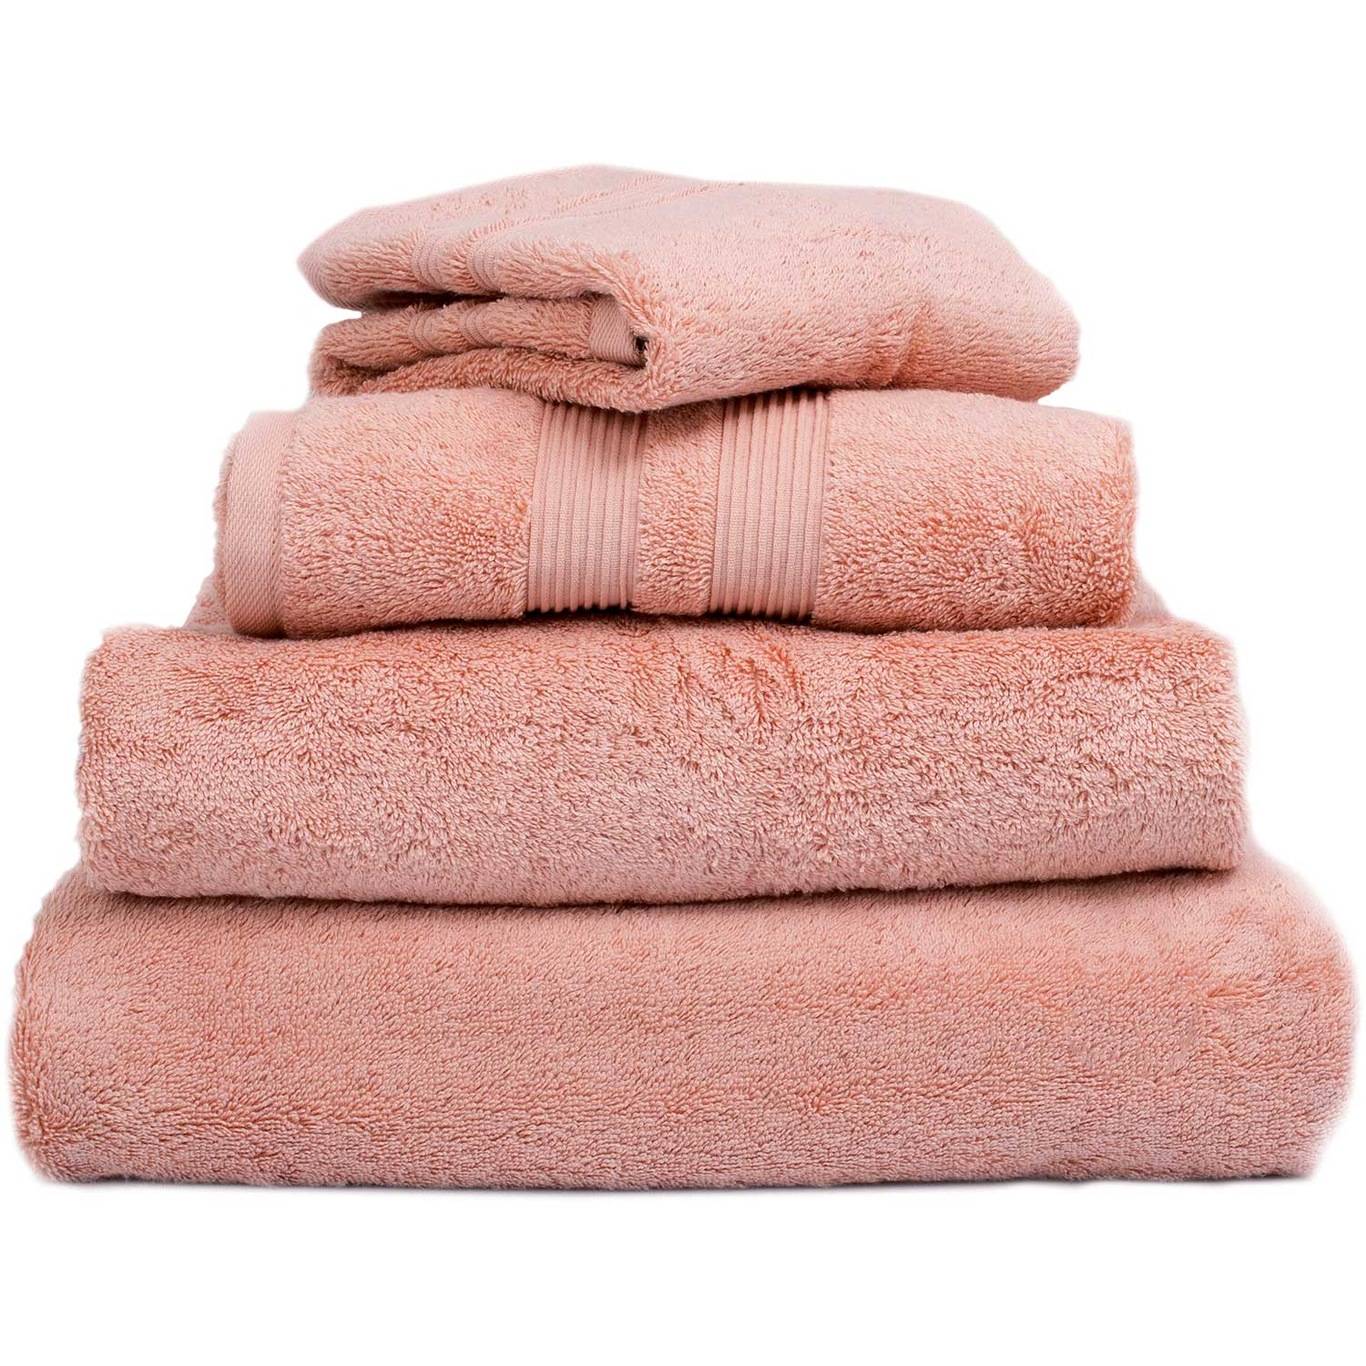 Fontana EKO Towel Pink, 70x140 cm